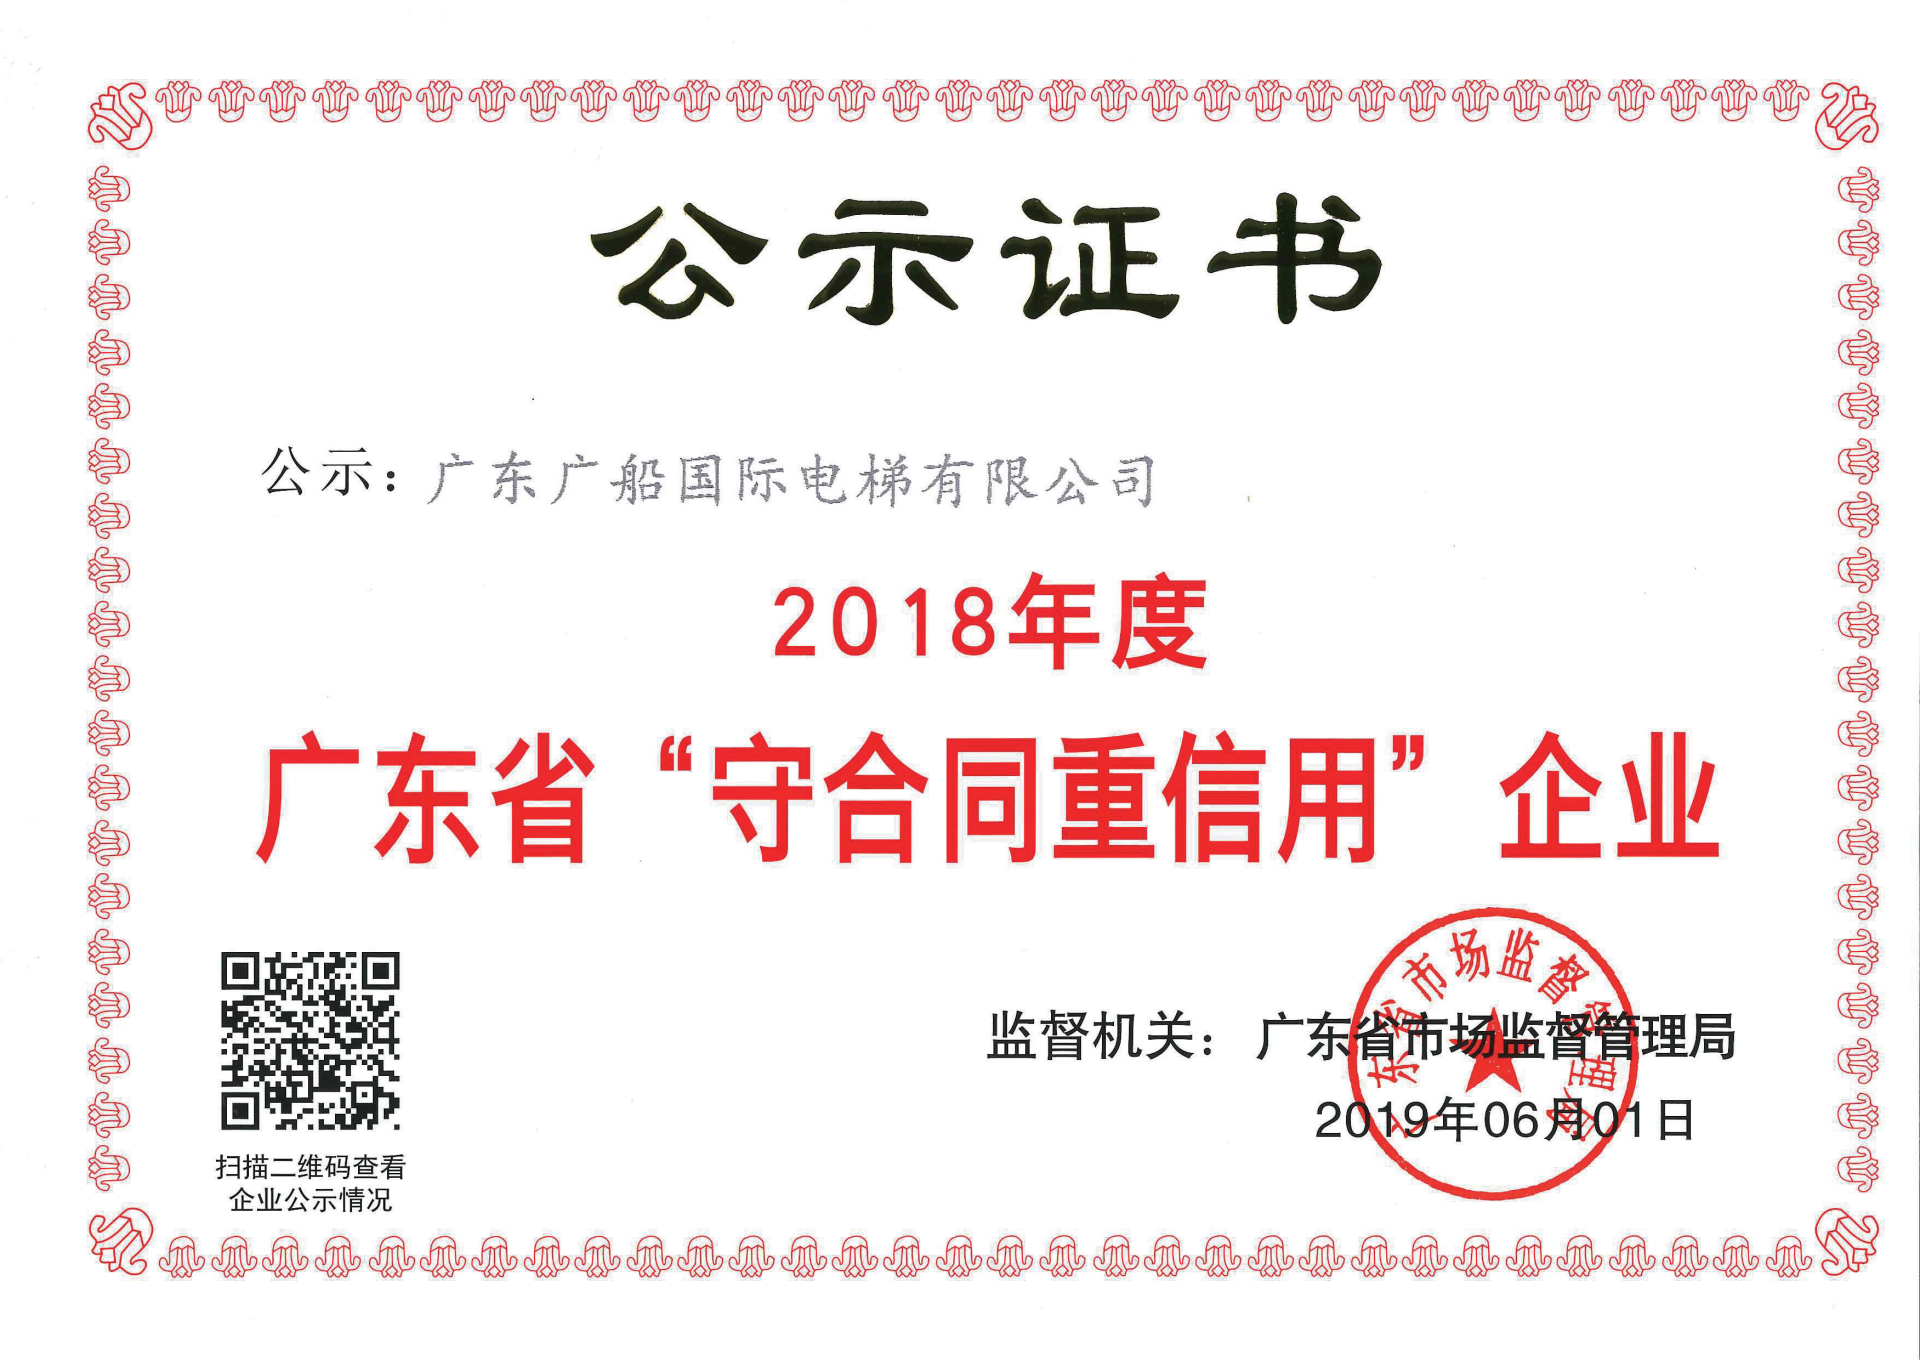 Publicity certificate in 2018